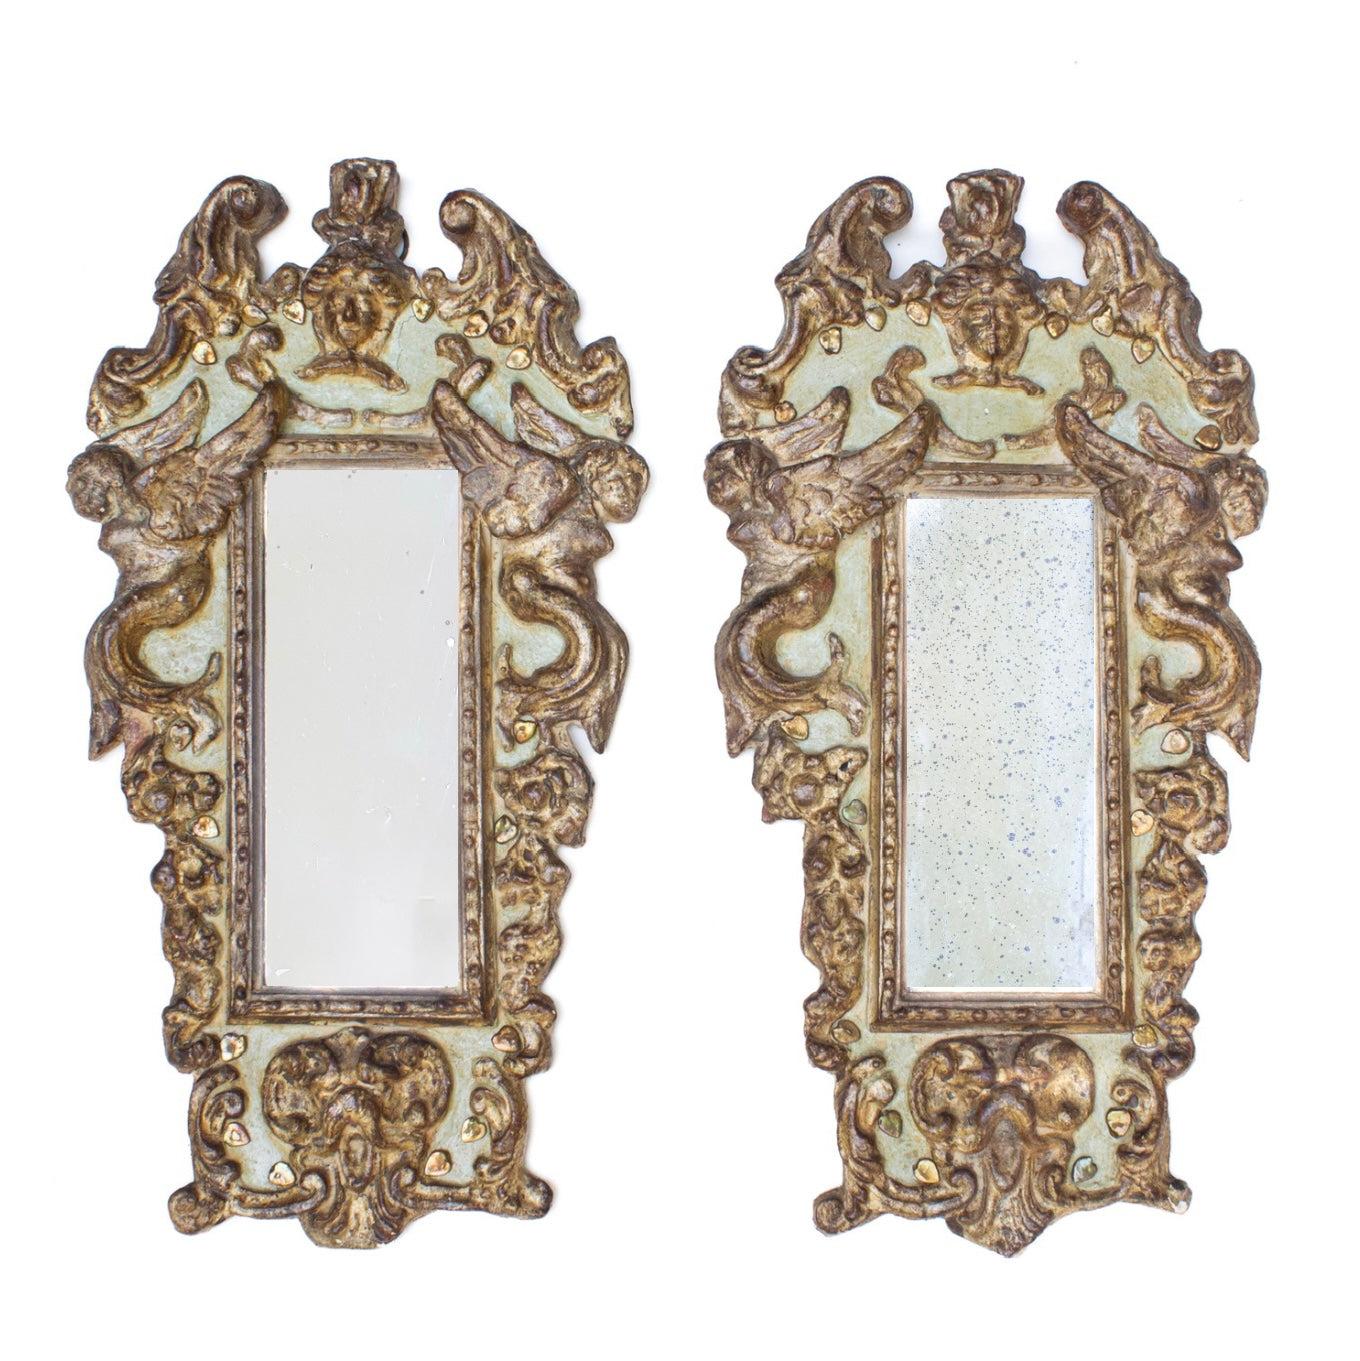 Paire de miroirs chérubins italiens du XVIIIe siècle, verts et dorés. Les miroirs ont été sculptés et moulés à la main, chaque chérubin étant unique. Les miroirs proviennent de Florence, en Italie, et sont ornés de perles baroques en forme de cœur